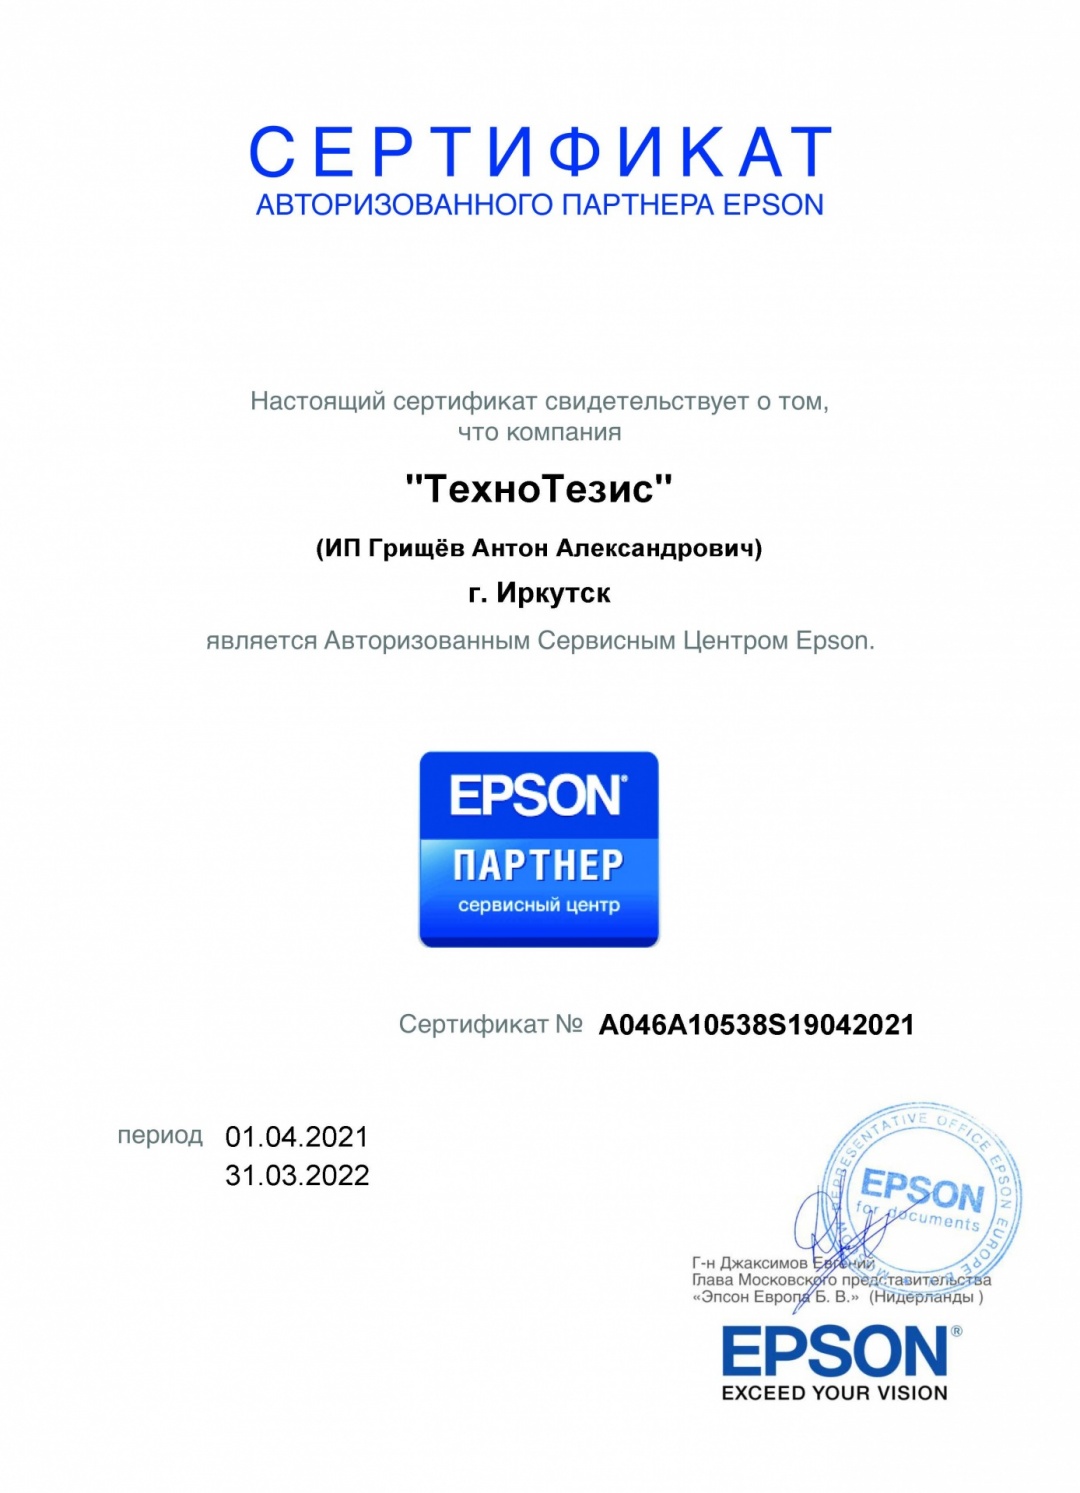 Сертификат авторизованного сервисного центра Epson